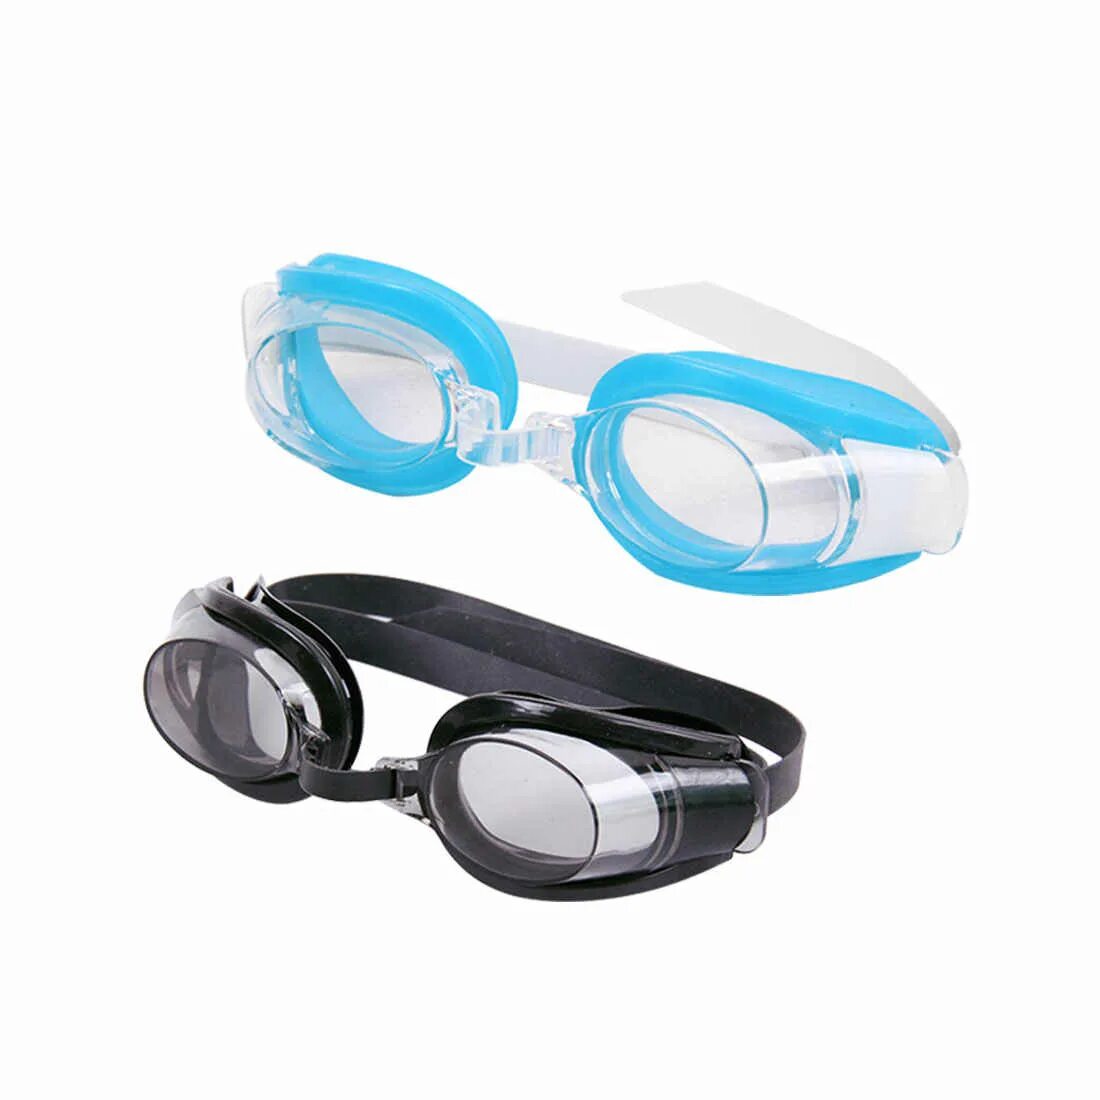 Очки для бассейна. Очки с берушами защитные. Плавательные очки с воздухом. Очки защита для бассейна.